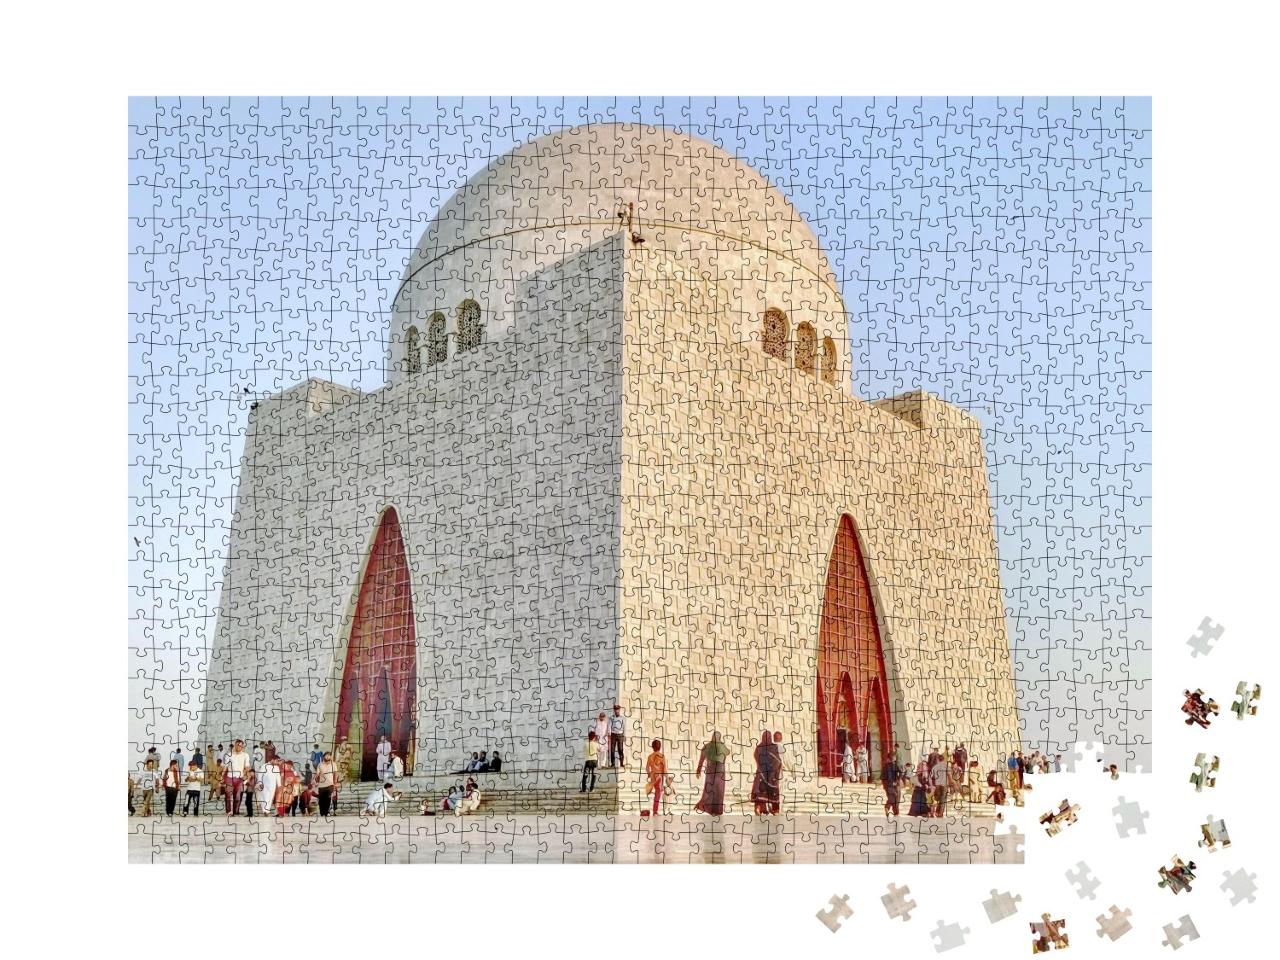 Puzzle de 1000 pièces « Qaid e Azam Muhammad Ali Jinnah, Mazar e Qaid »